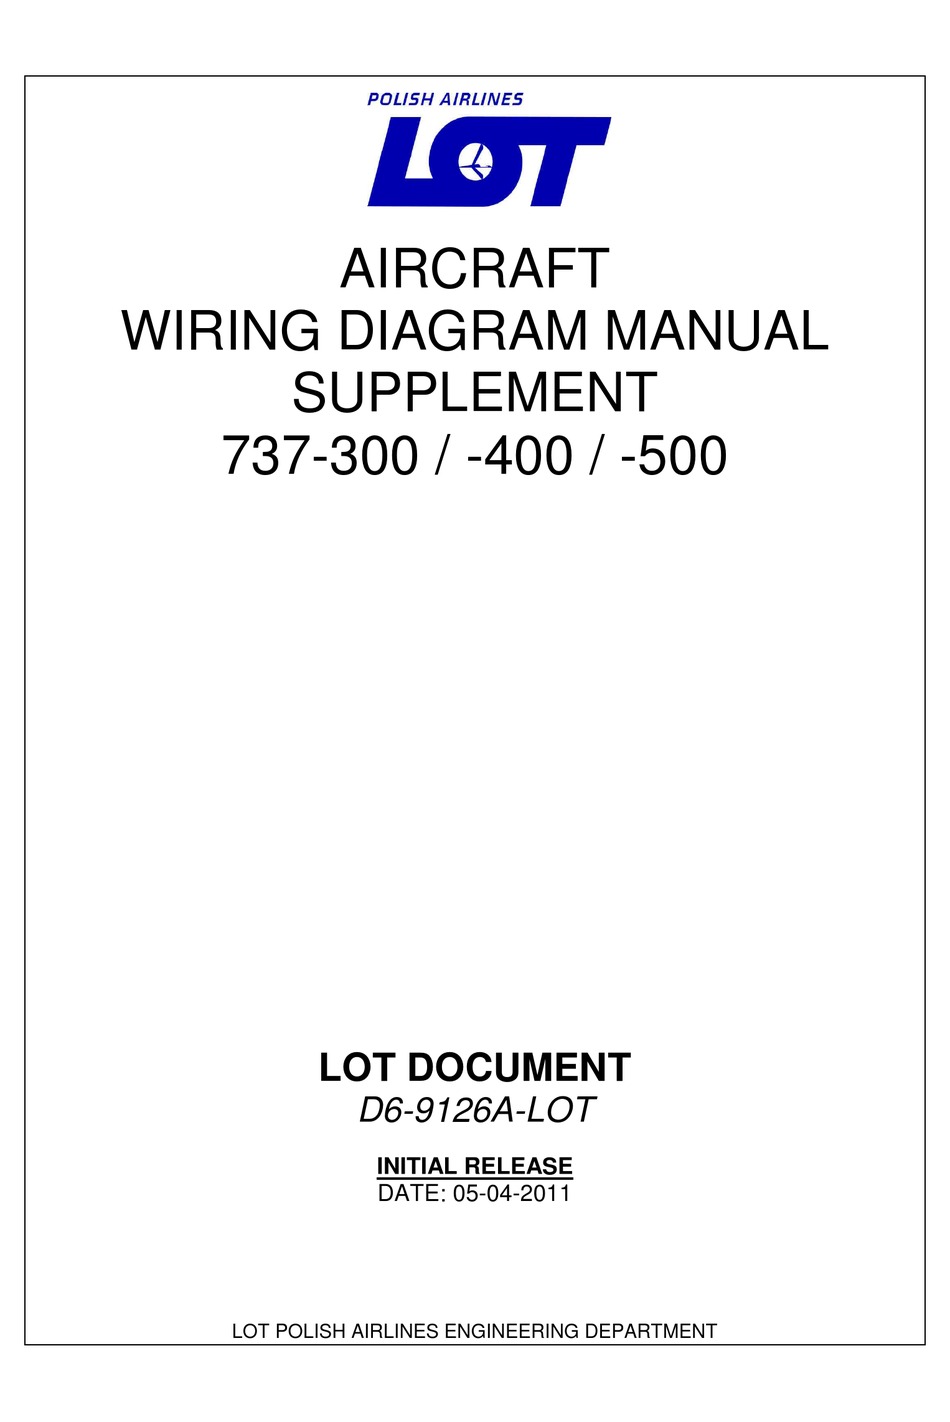 BOEING 737-300 WIRING DIAGRAM MANUAL SUPPLEMENT Pdf Download | ManualsLib